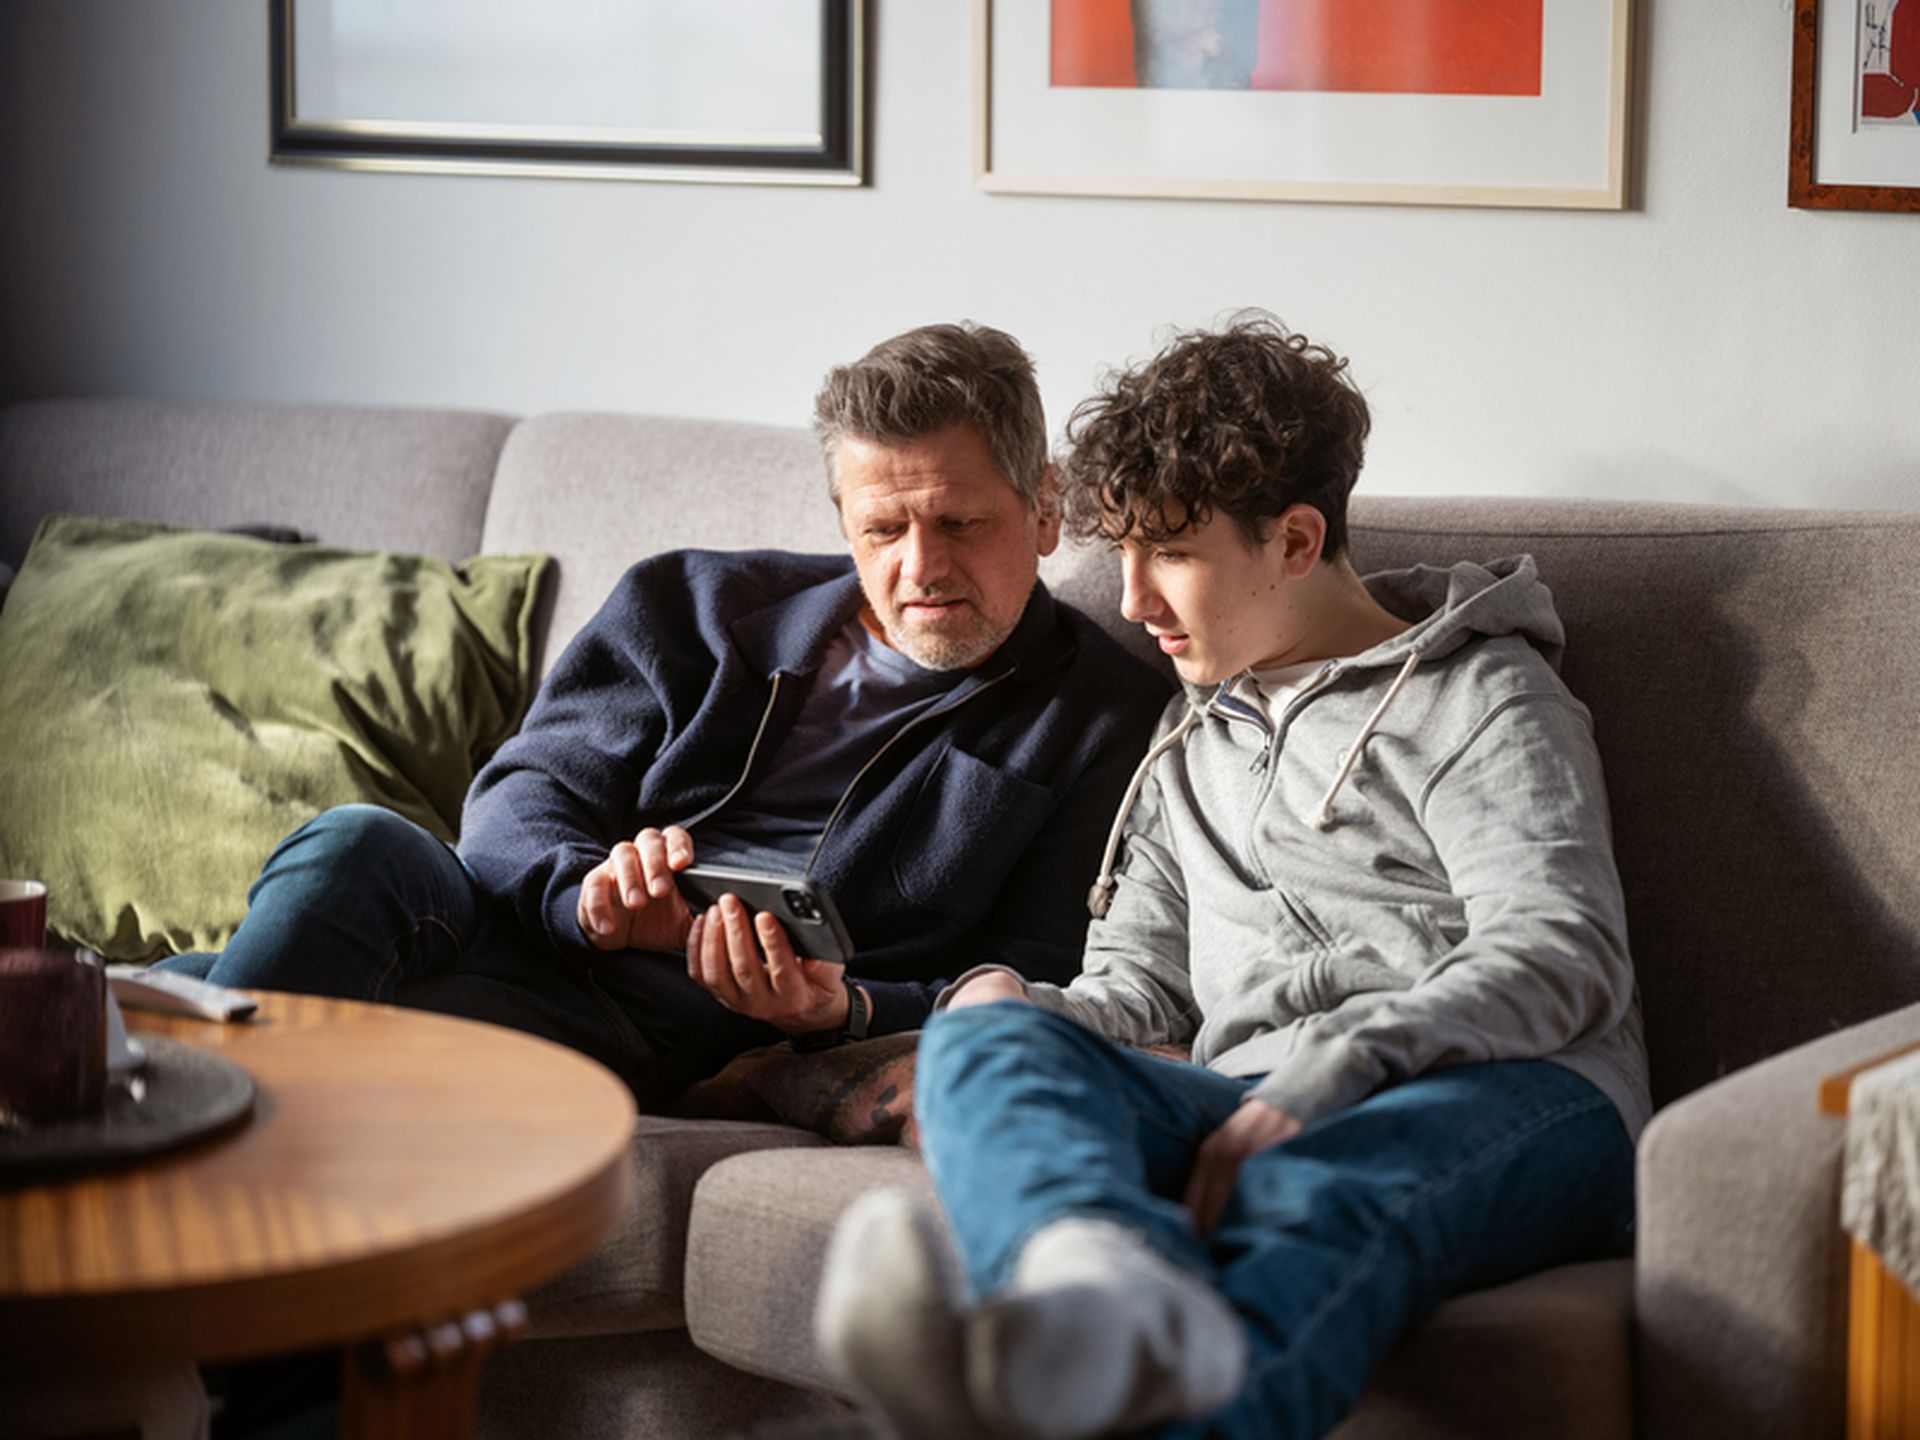 Far og sønn ser på mobil sammen i sofaen